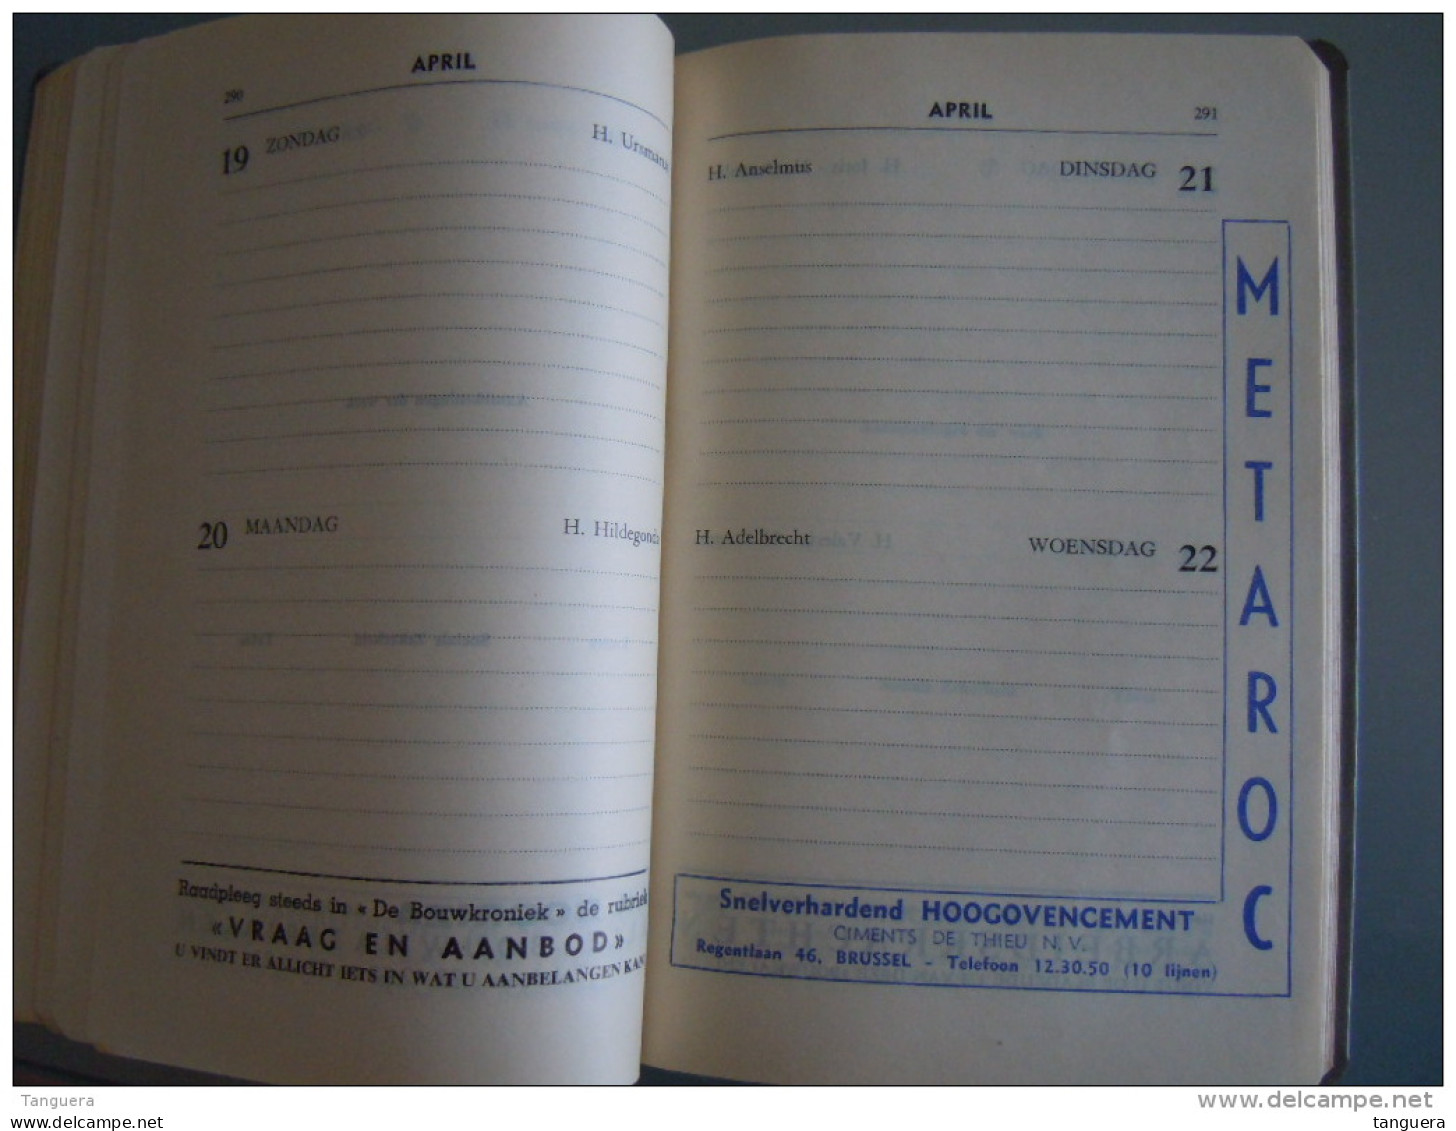 Vlaamse bouw-en aanbestedingskalender 1959 Uitgave de bouwkroniek Brussel Agenda du batiment et des adjudications